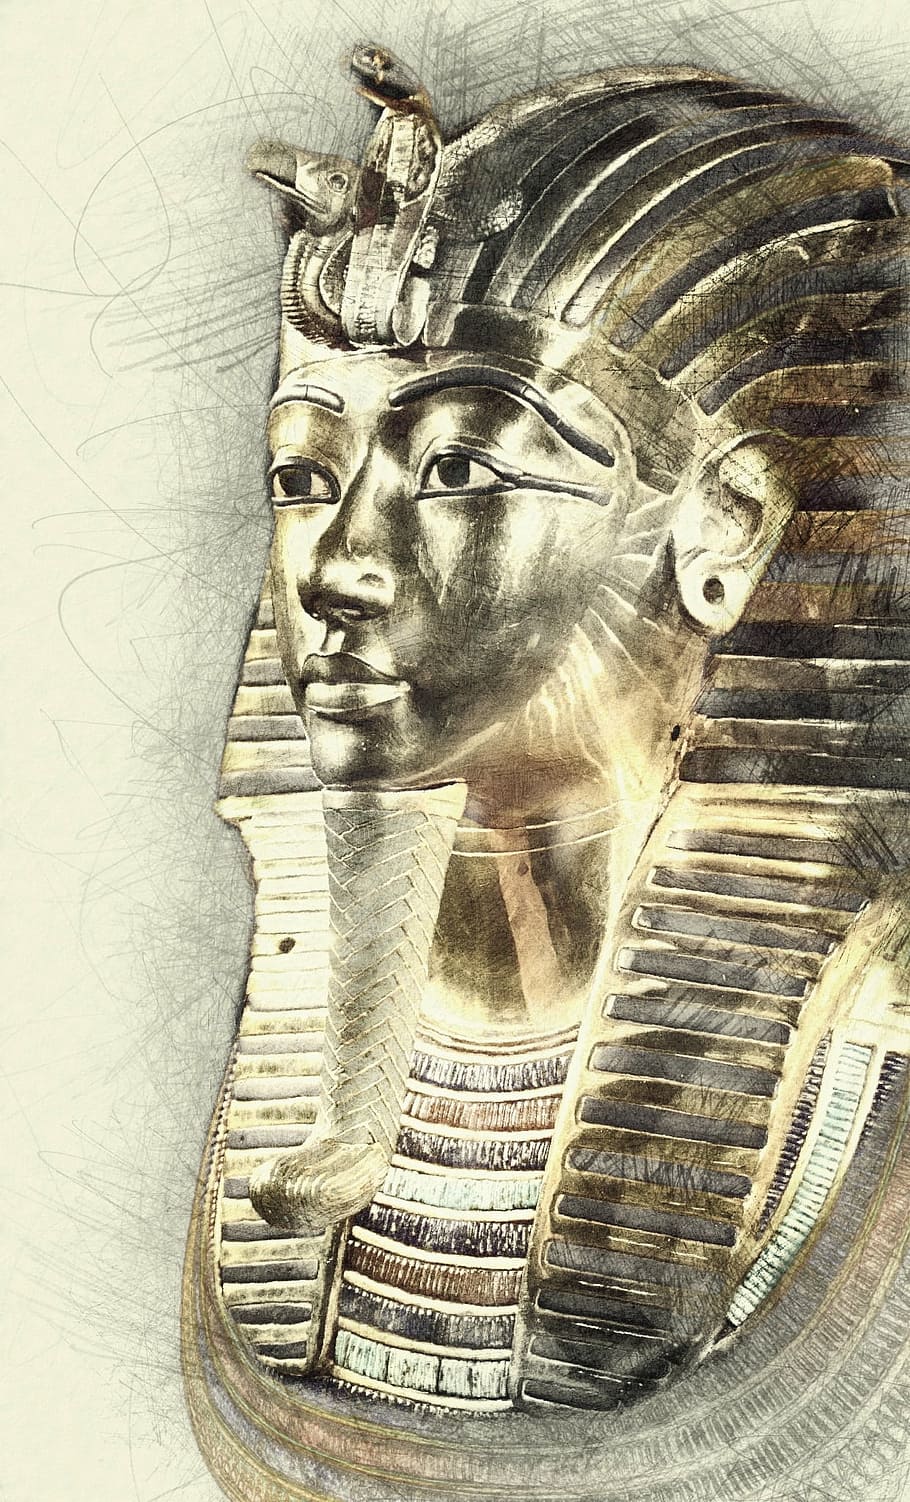 エジプトの鉛筆のスケッチ, ツタンカーメン, デスマスク, エジプト, 像, 古代, エジプト人, 文化, ファラオ, 考古学